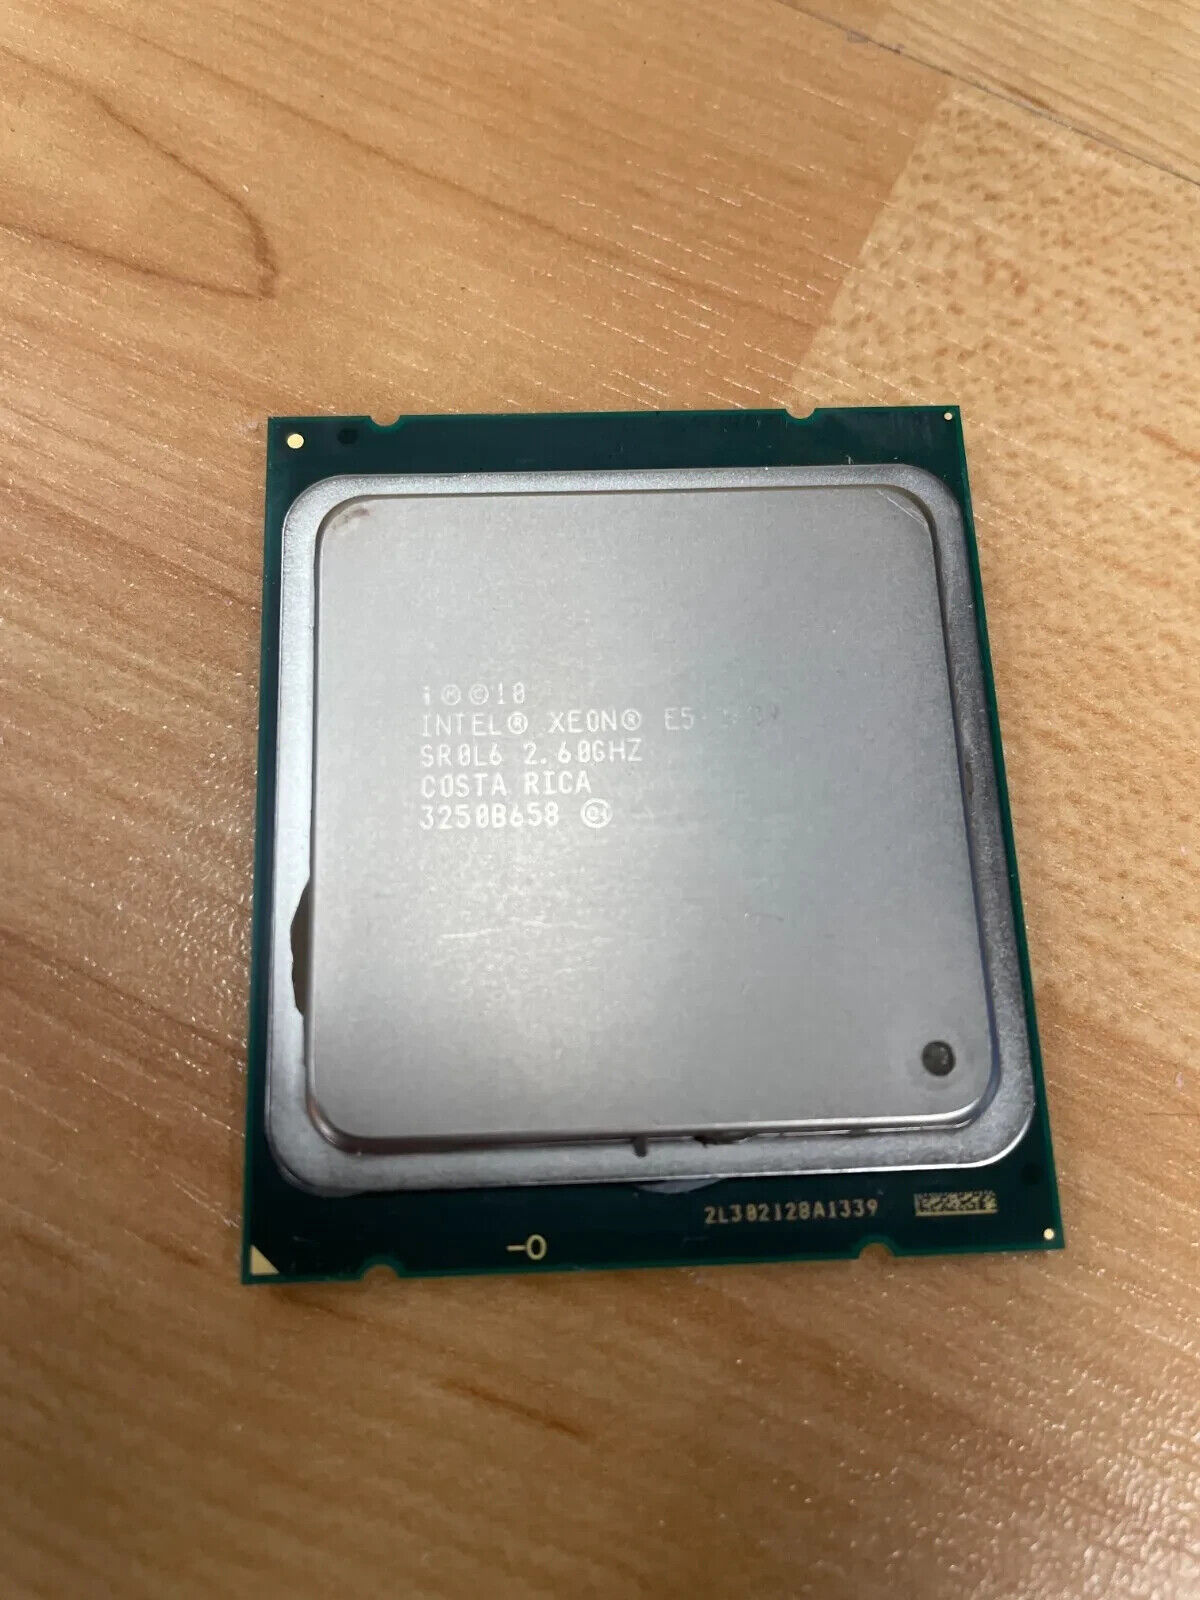 Intel Xeon E5-2689 SR0L6 2.6GHz 20MB 8 core LGA2011 B Grade Server CPU Processor